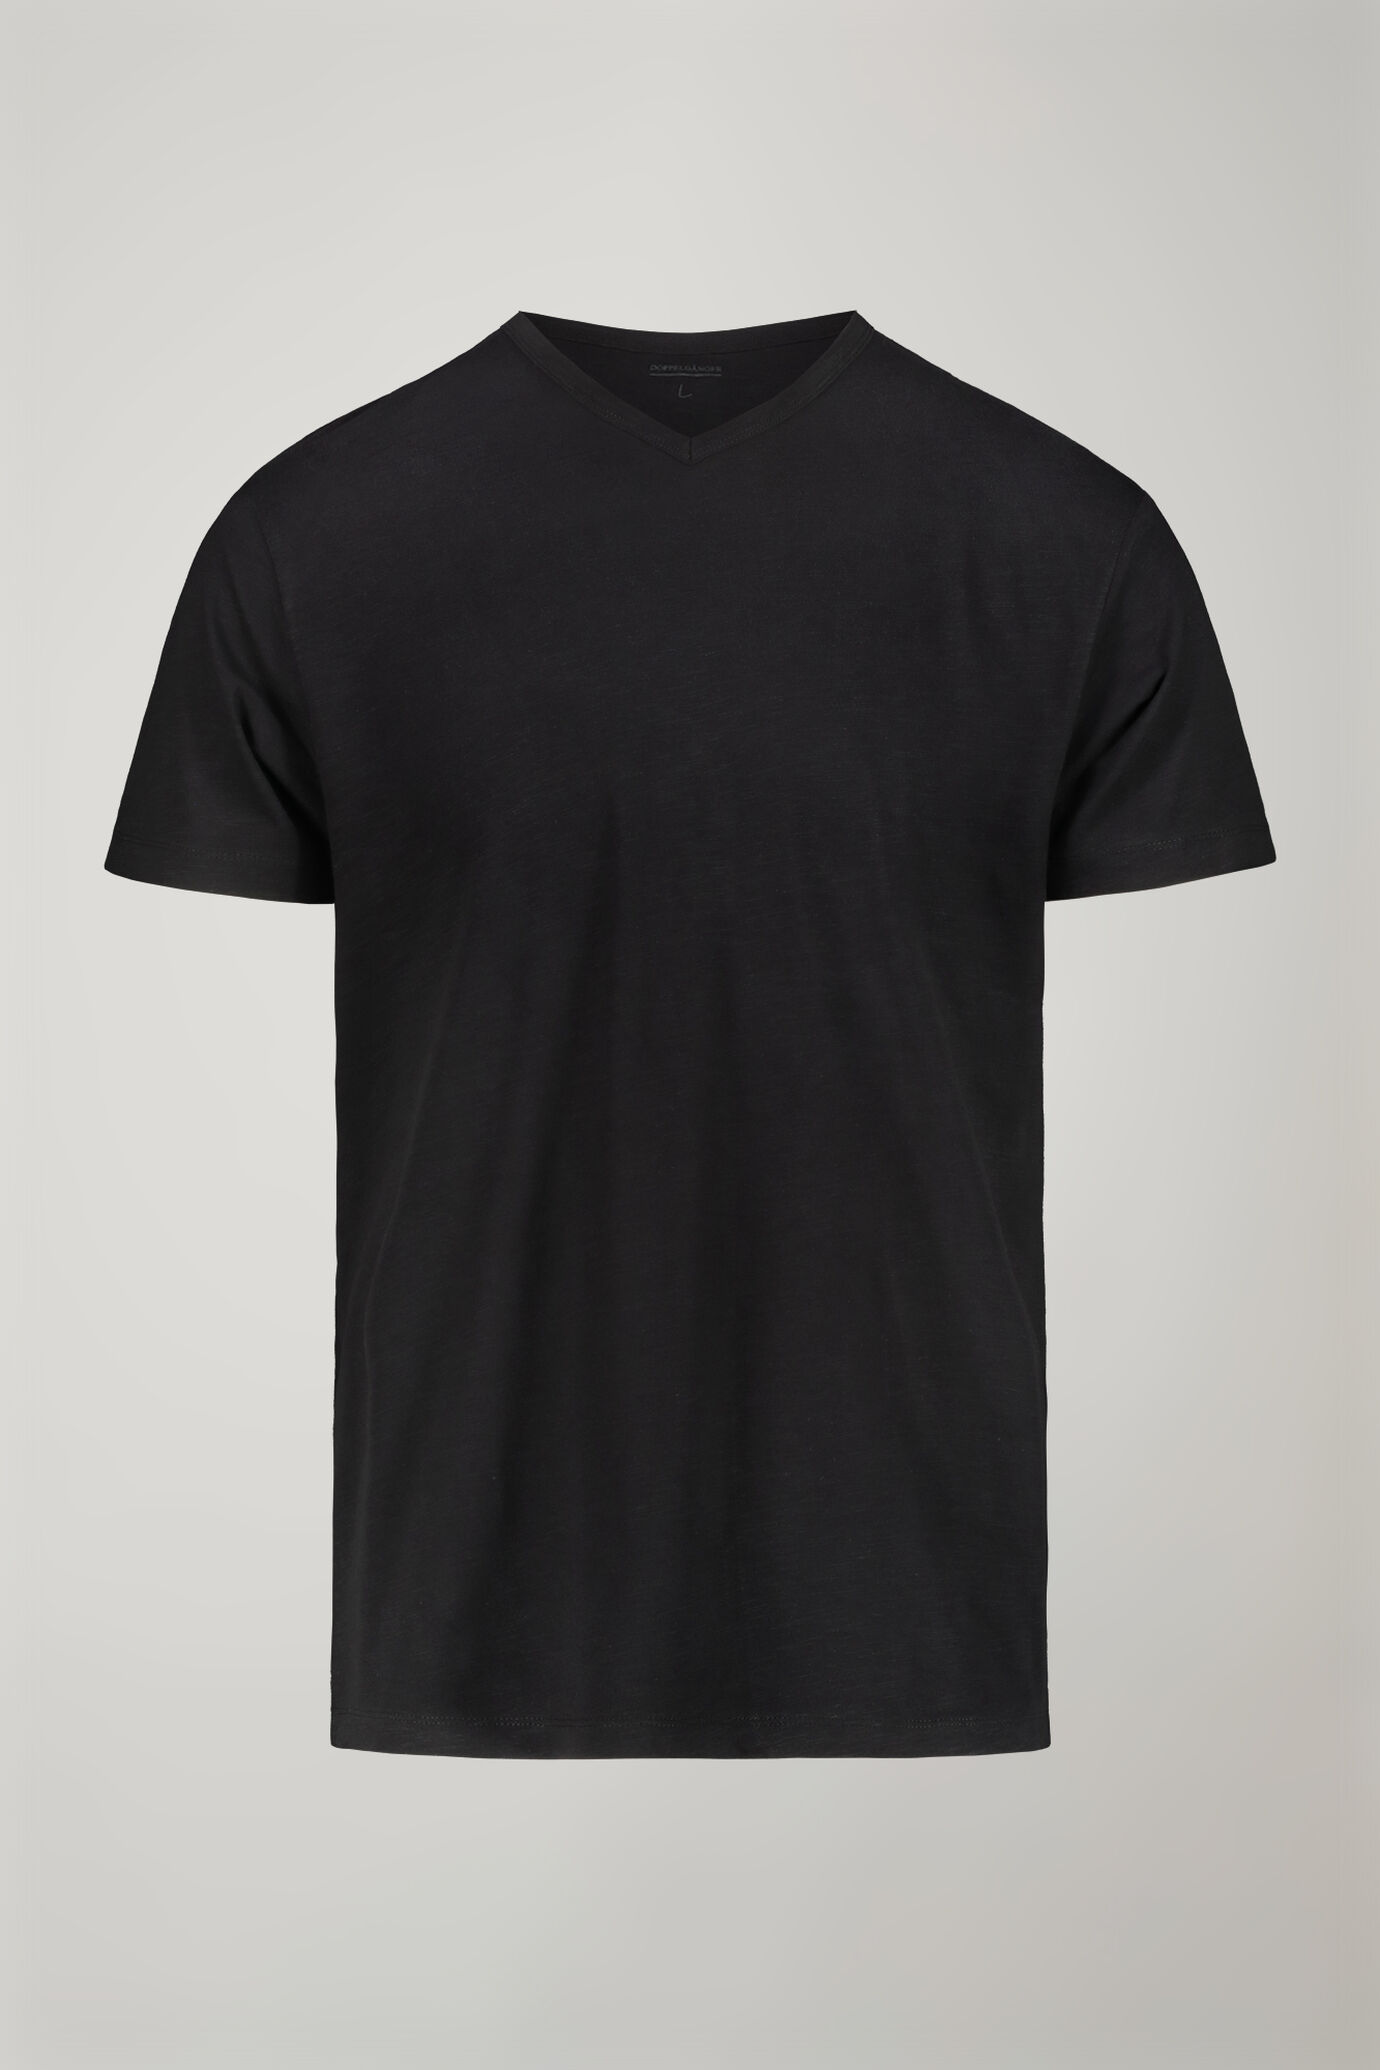 T-shirt uomo scollo a v 100% cotone effetto fiammato regular fit image number 4